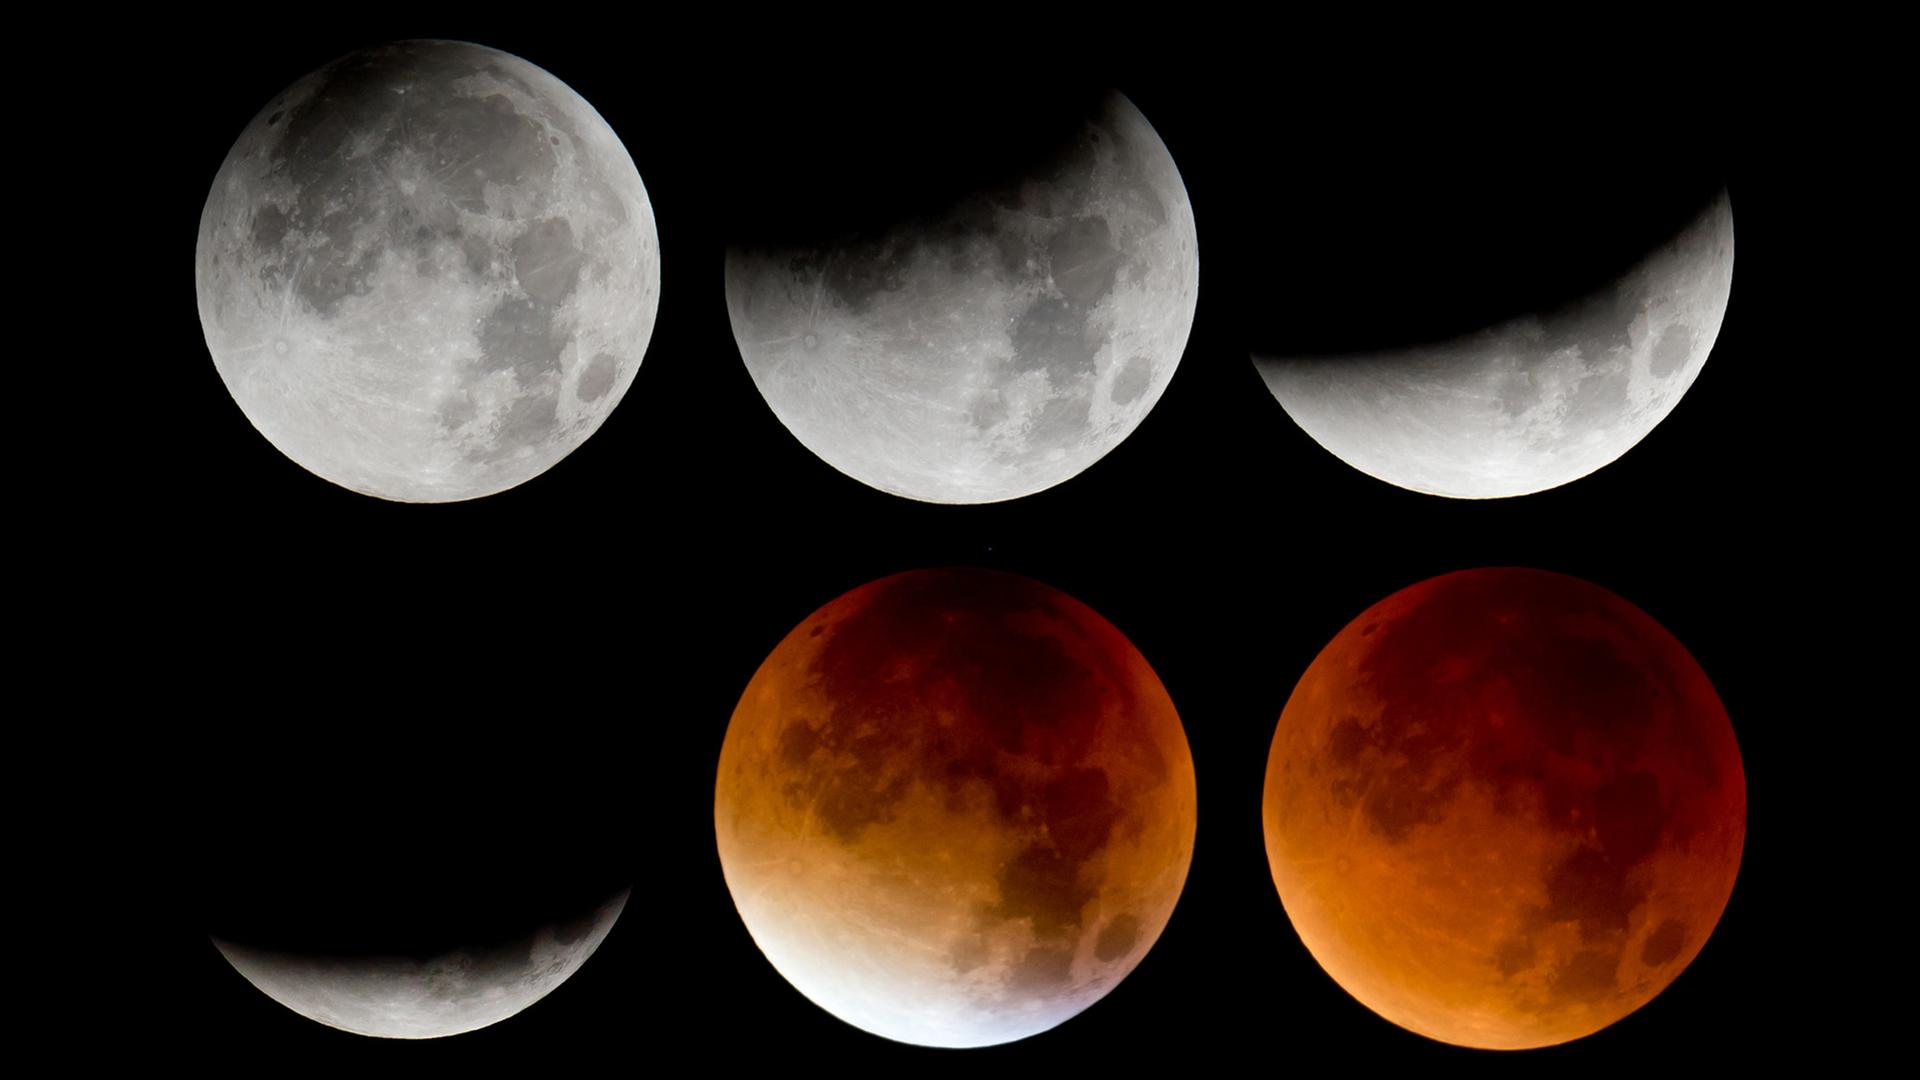 Die Bildkombo zeigt von links oben nach rechts unten die verschiedenen Phasen der totalen Mondfinsternis.